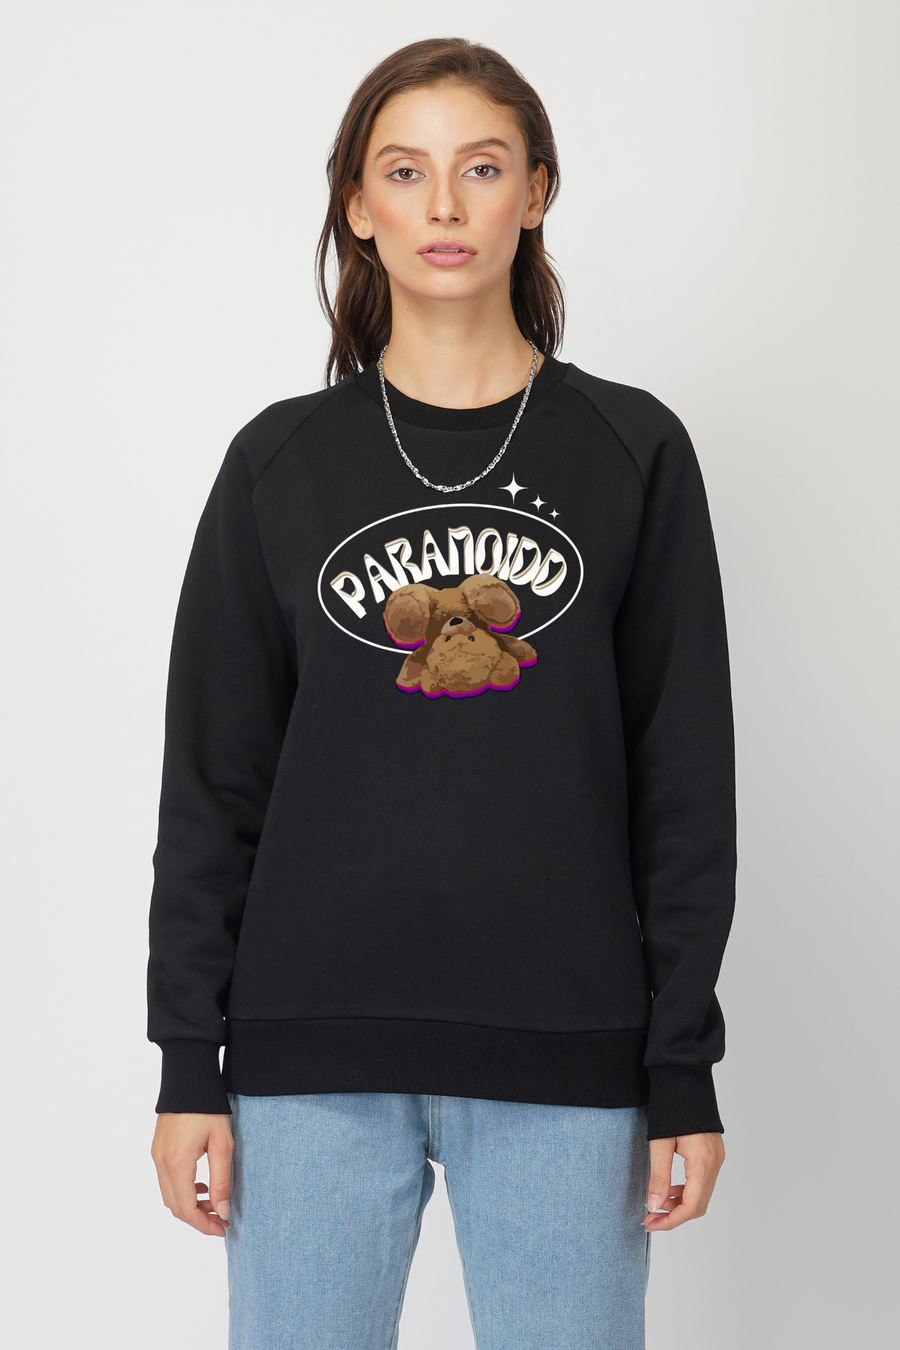 Paranoid-Sweatshirt